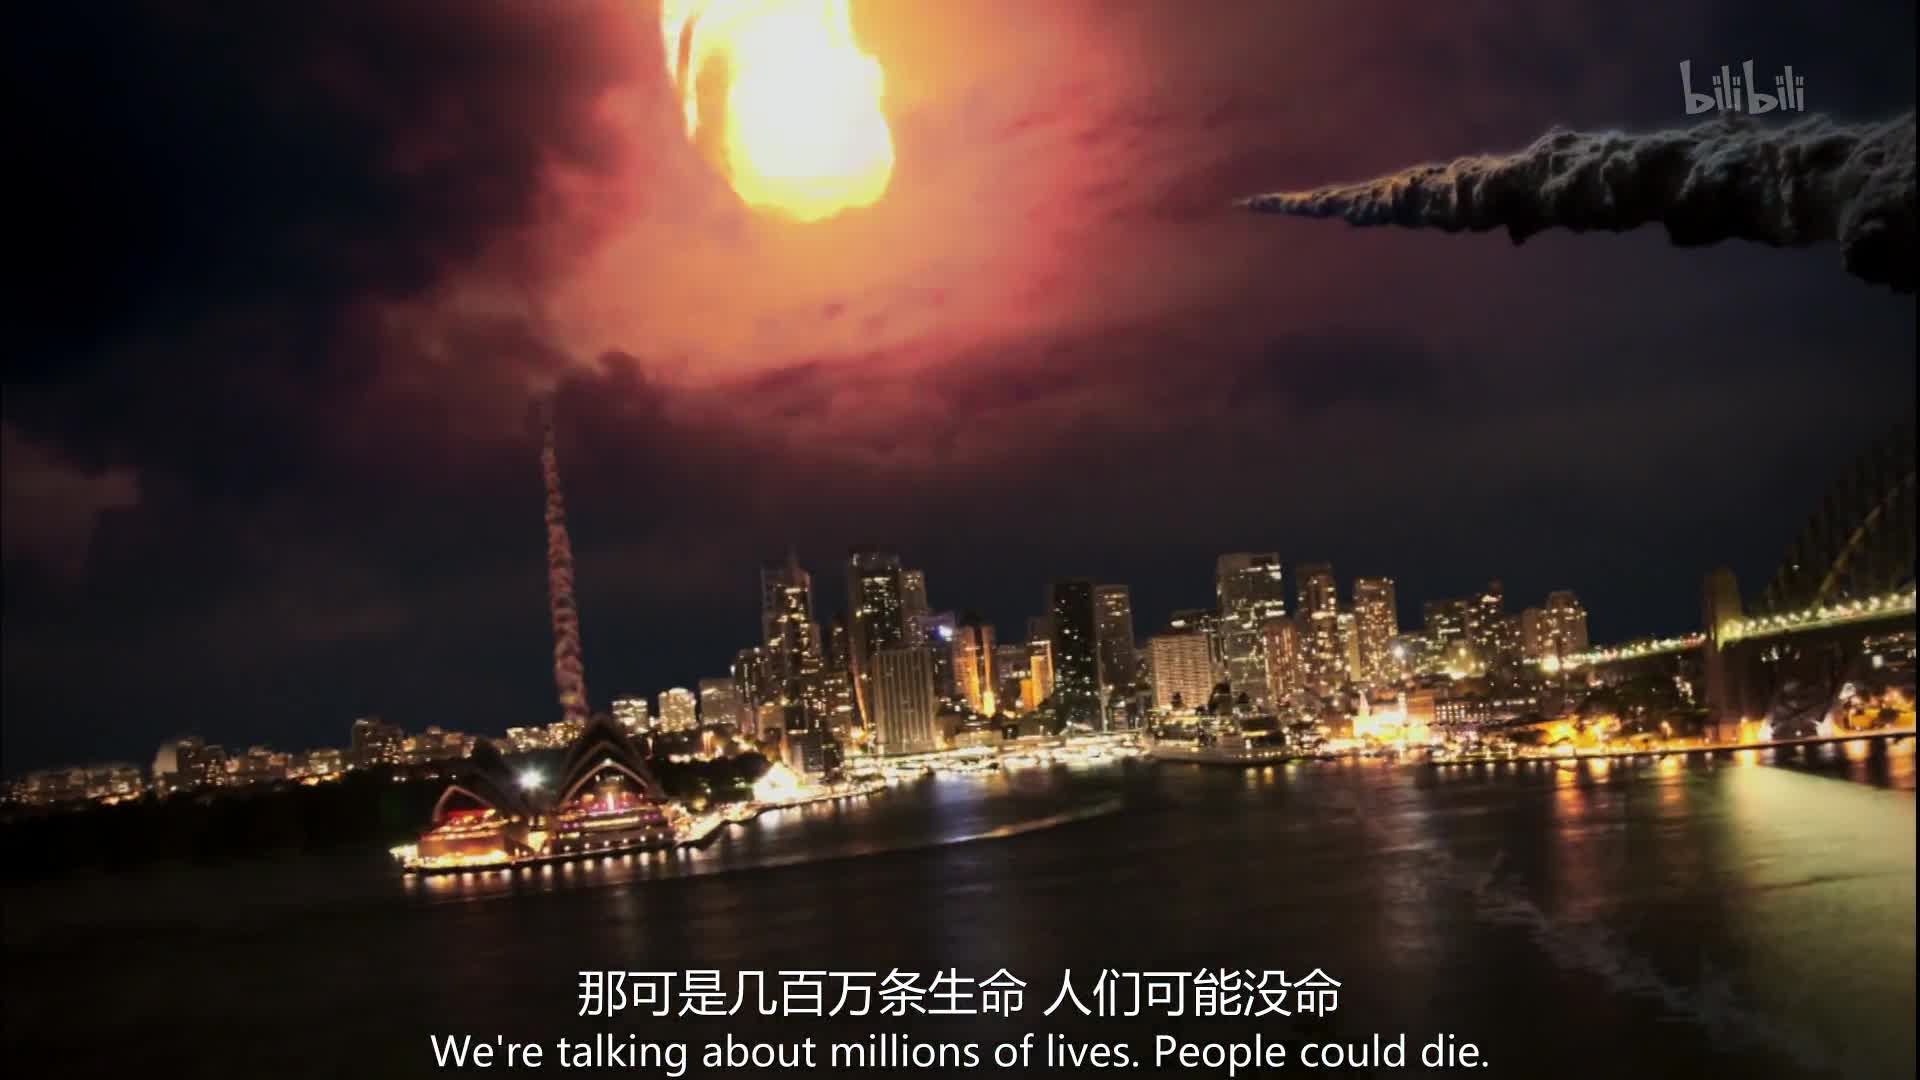 【纪录片】天外煞星-Bad Universe 01 小行星的毁灭撞击